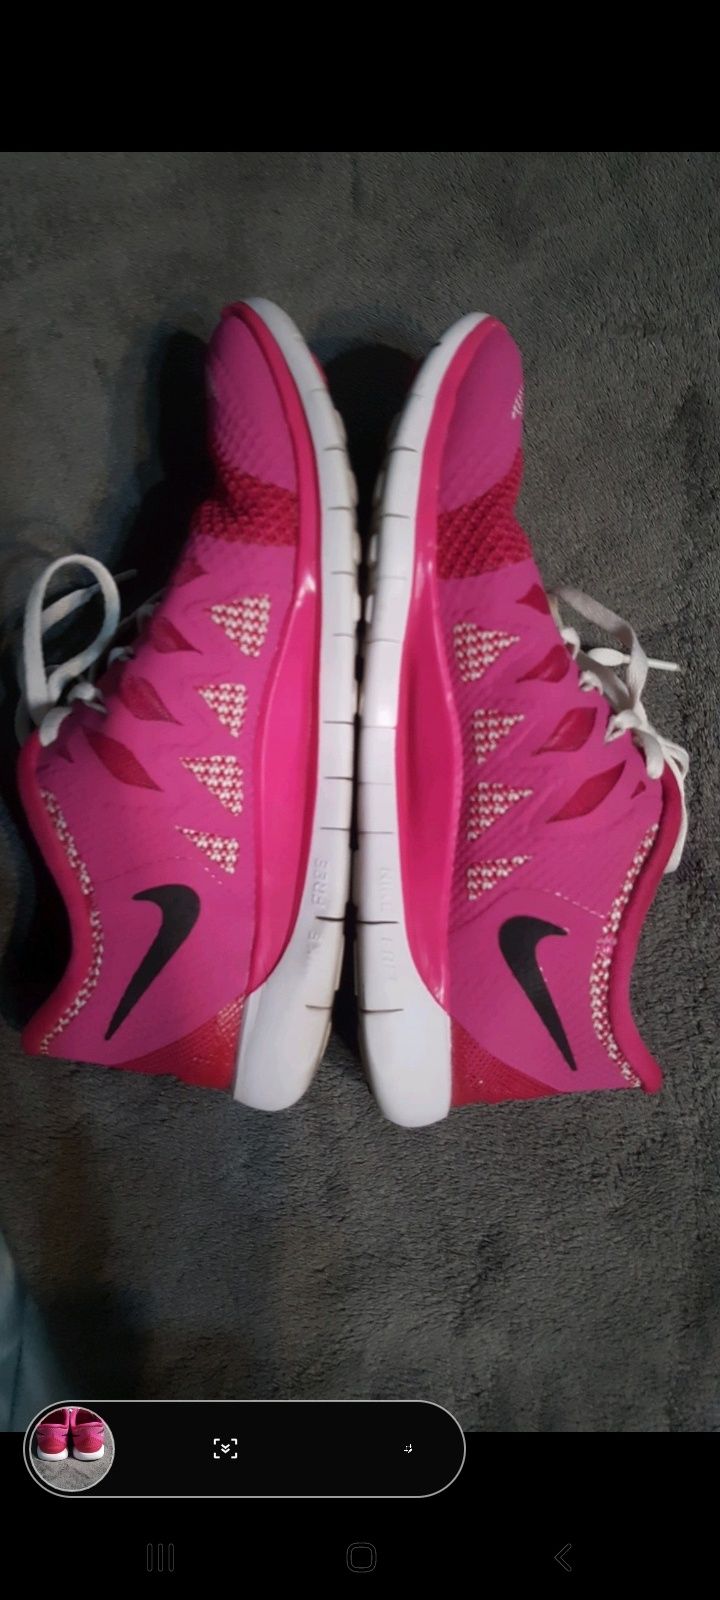 Buty Nike 38,5 adidasy róż lekkie trening siłownia fitness różowe